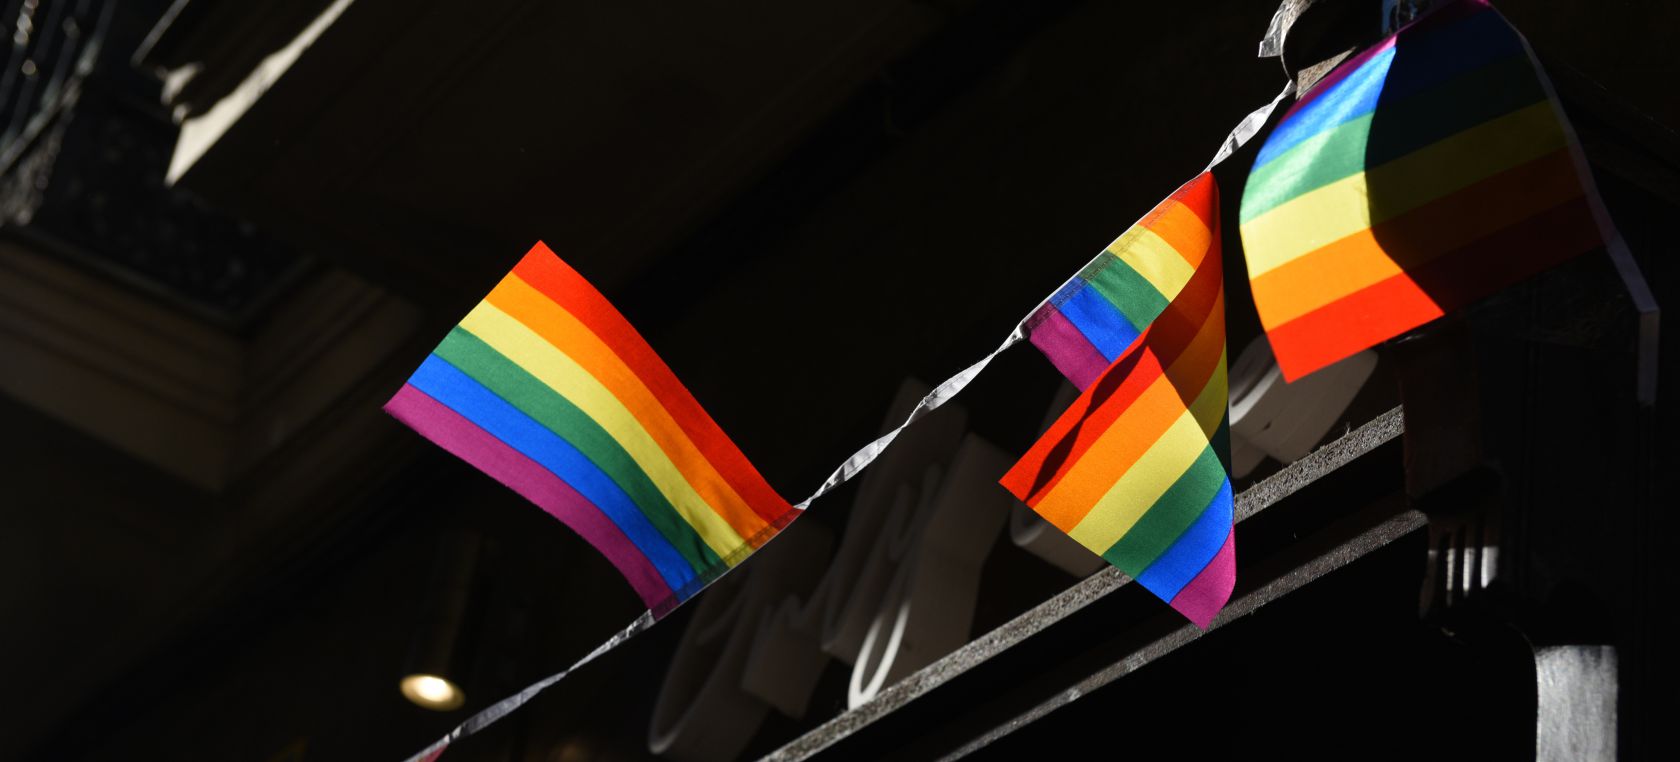 Orgullo LGTB Madrid 2021: programa completo y fechas clave de las actividades y actos reivindicativos